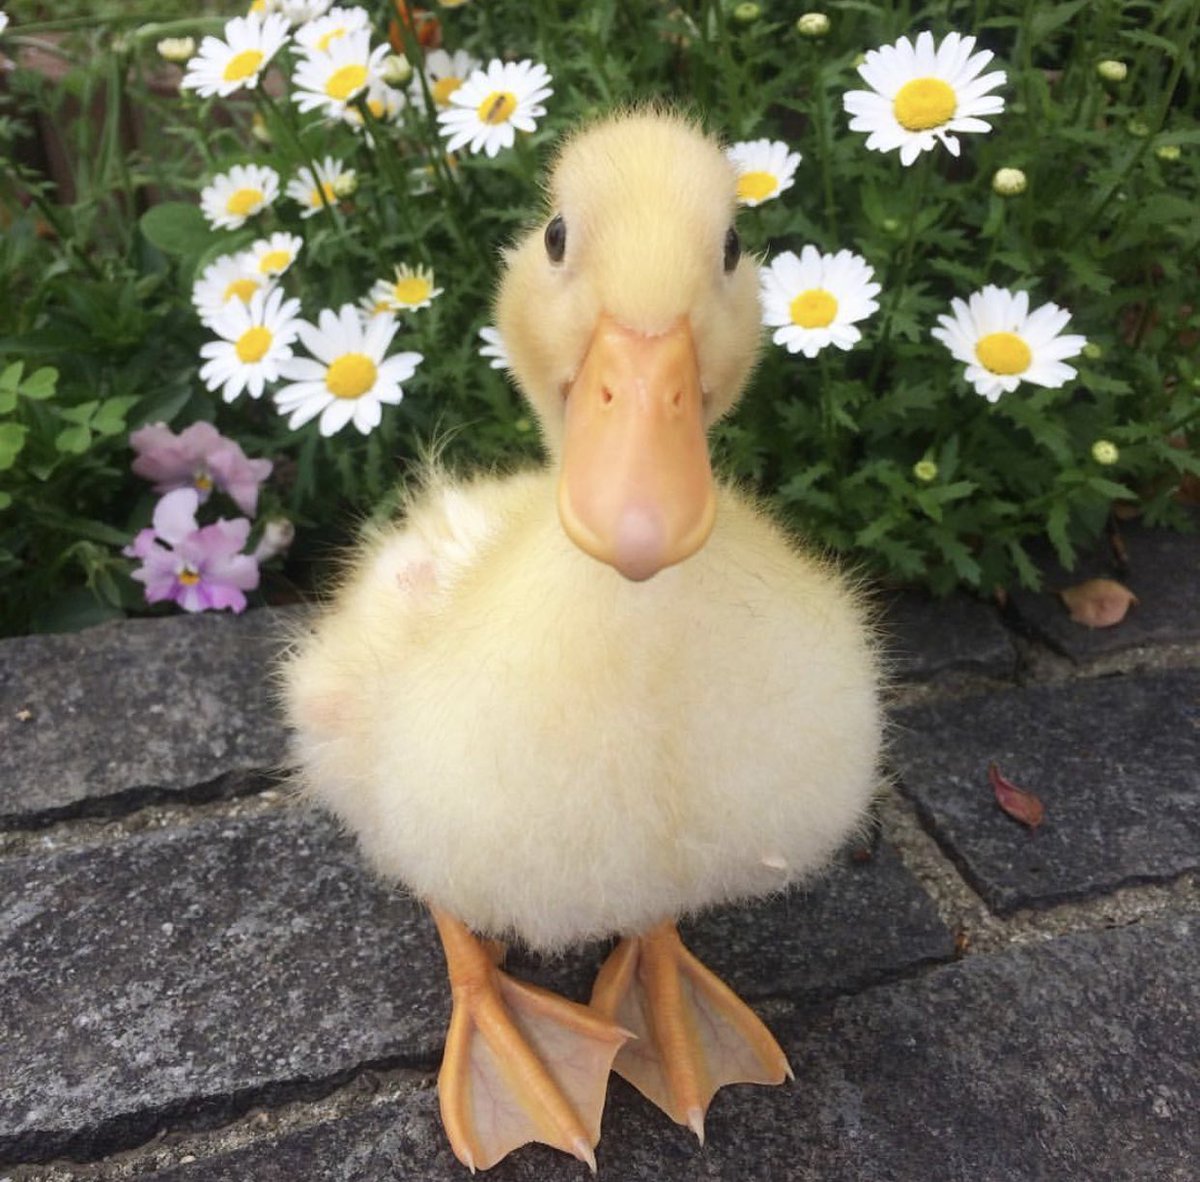 Duck fan account